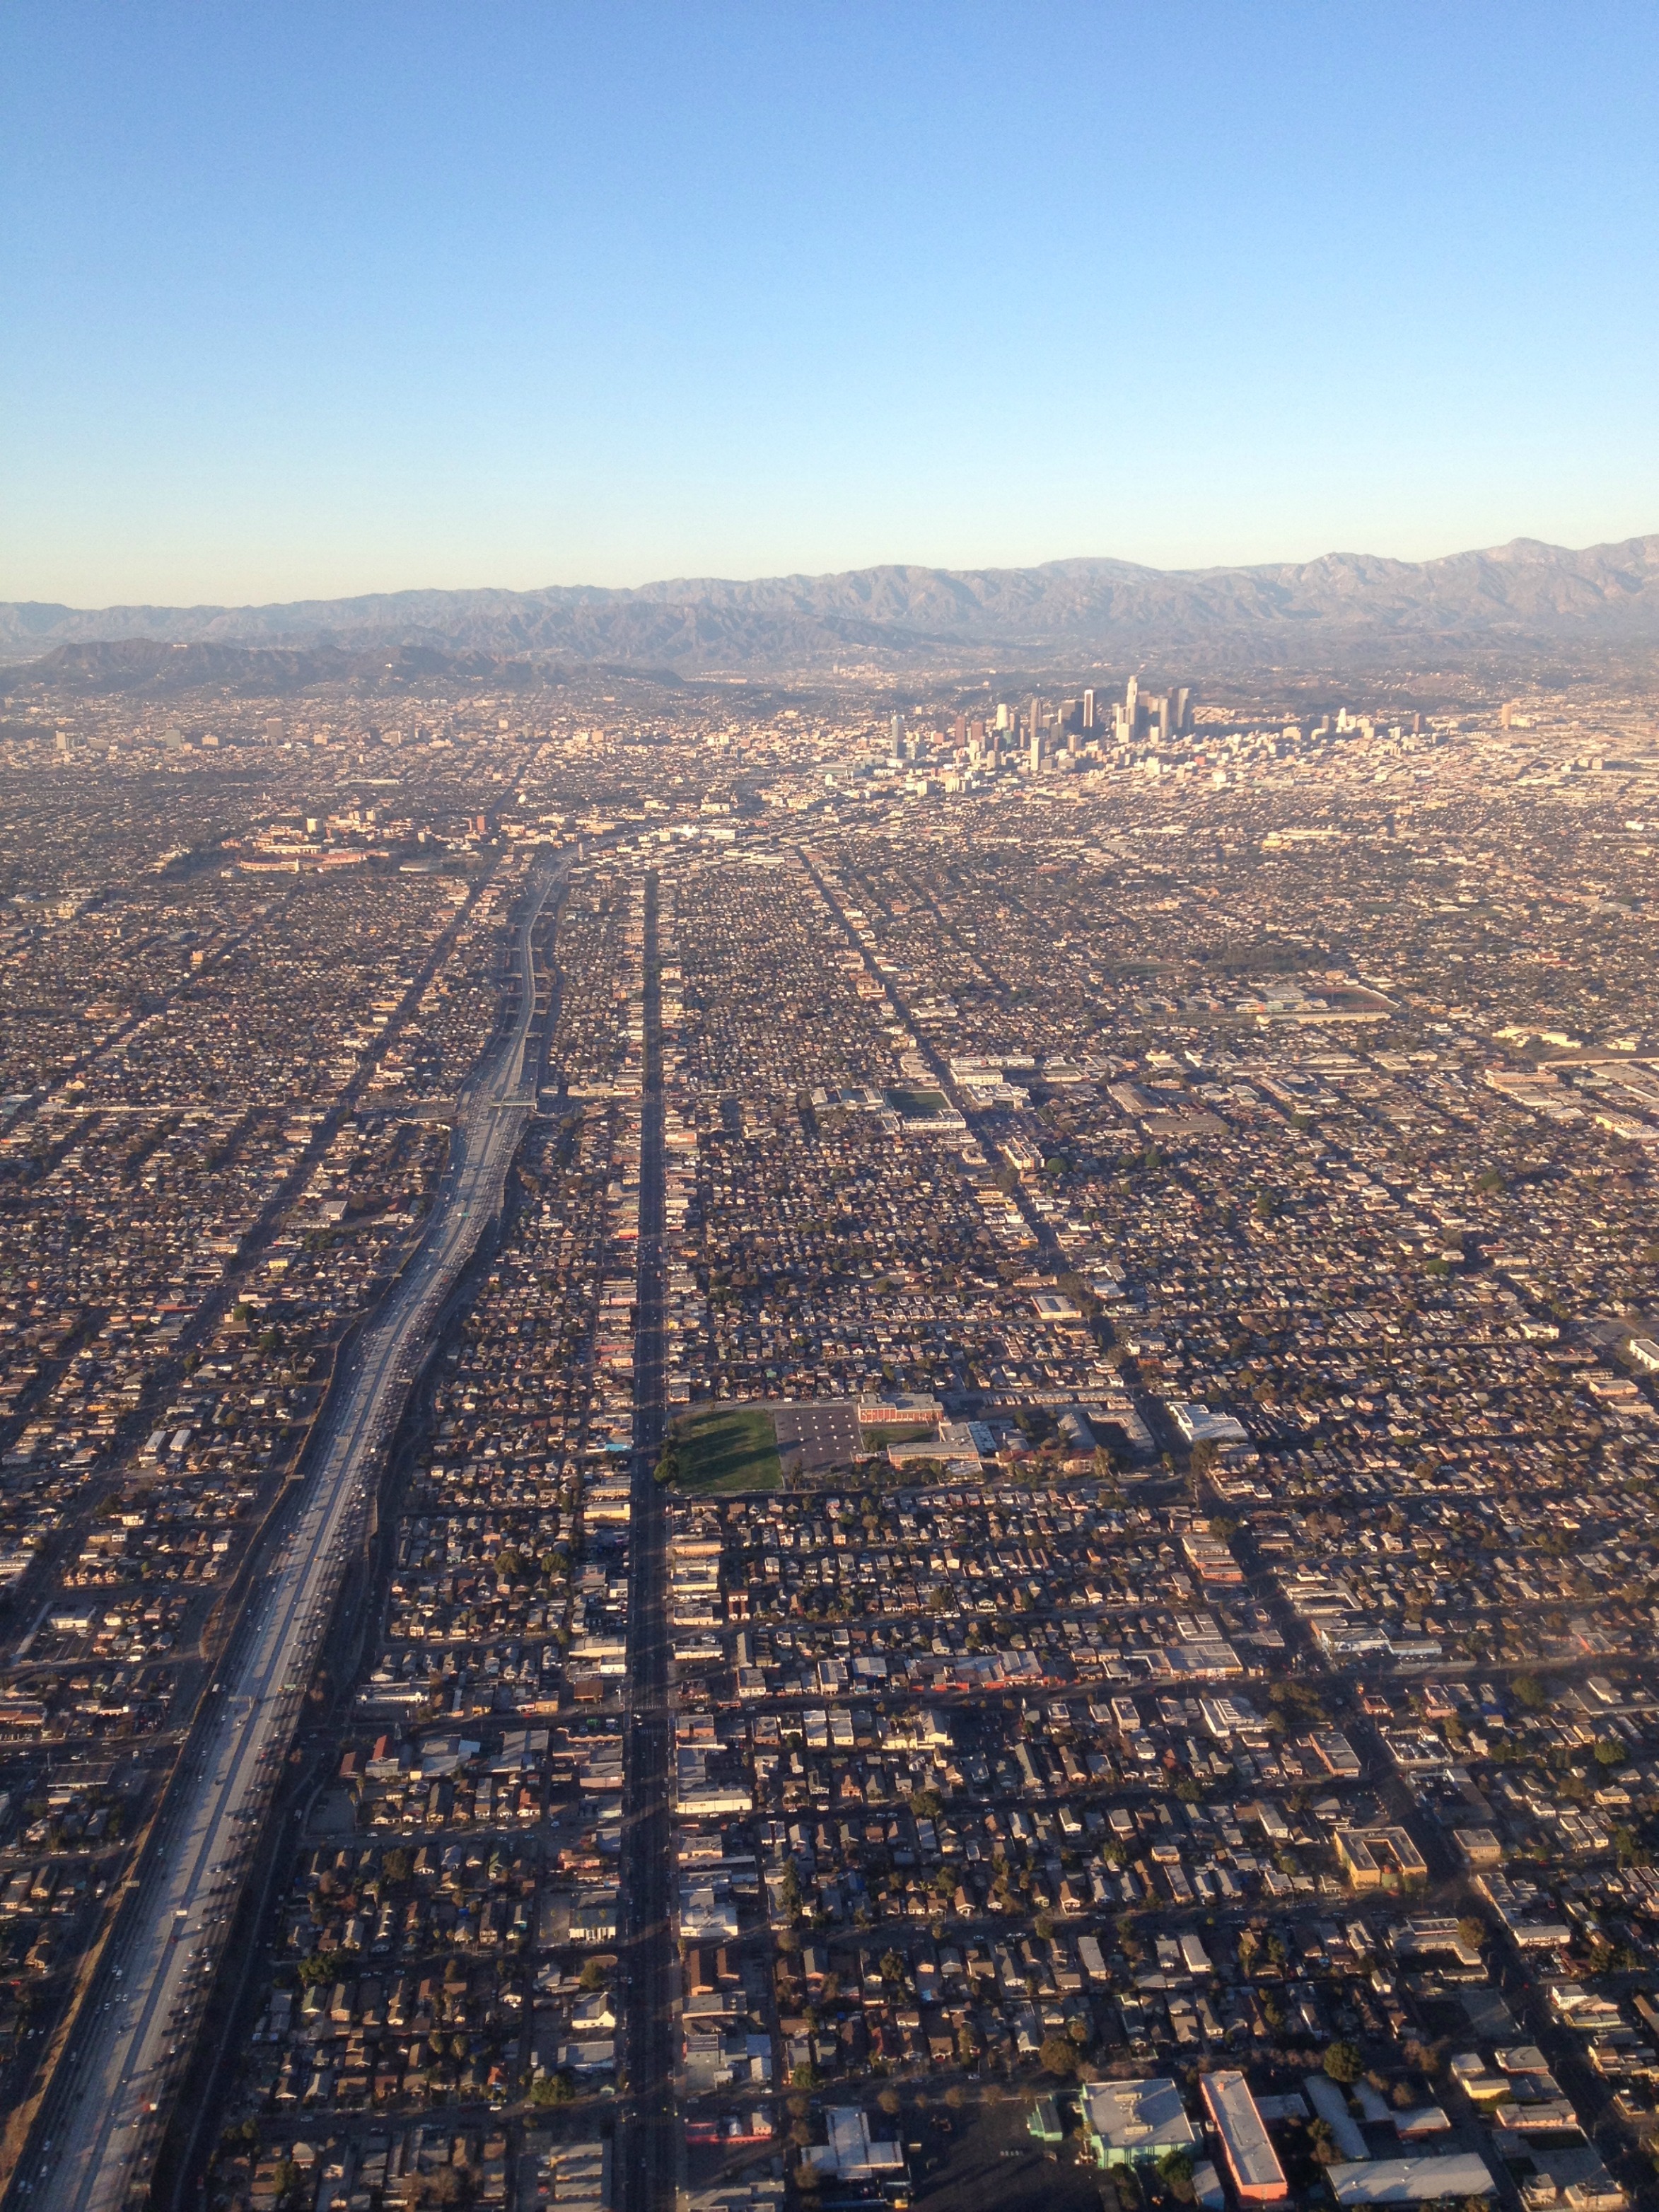 horizons-los-angeles-aerial-view-jan-2014-photo-by-joe-mckendrick.jpg